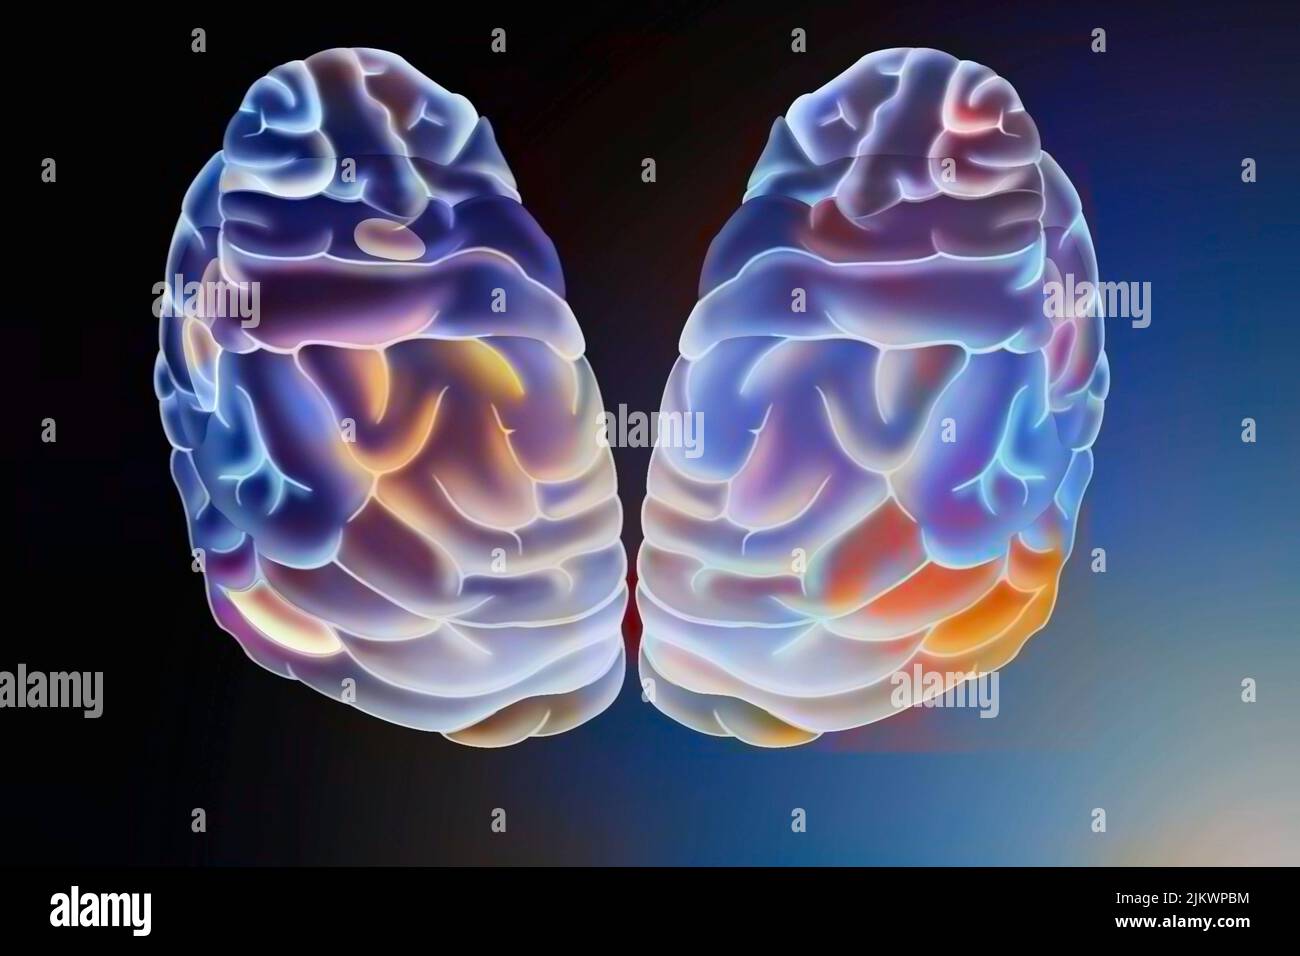 Zeichnung eines menschlichen Gehirns und seiner verschiedenen Bereiche. Stockfoto